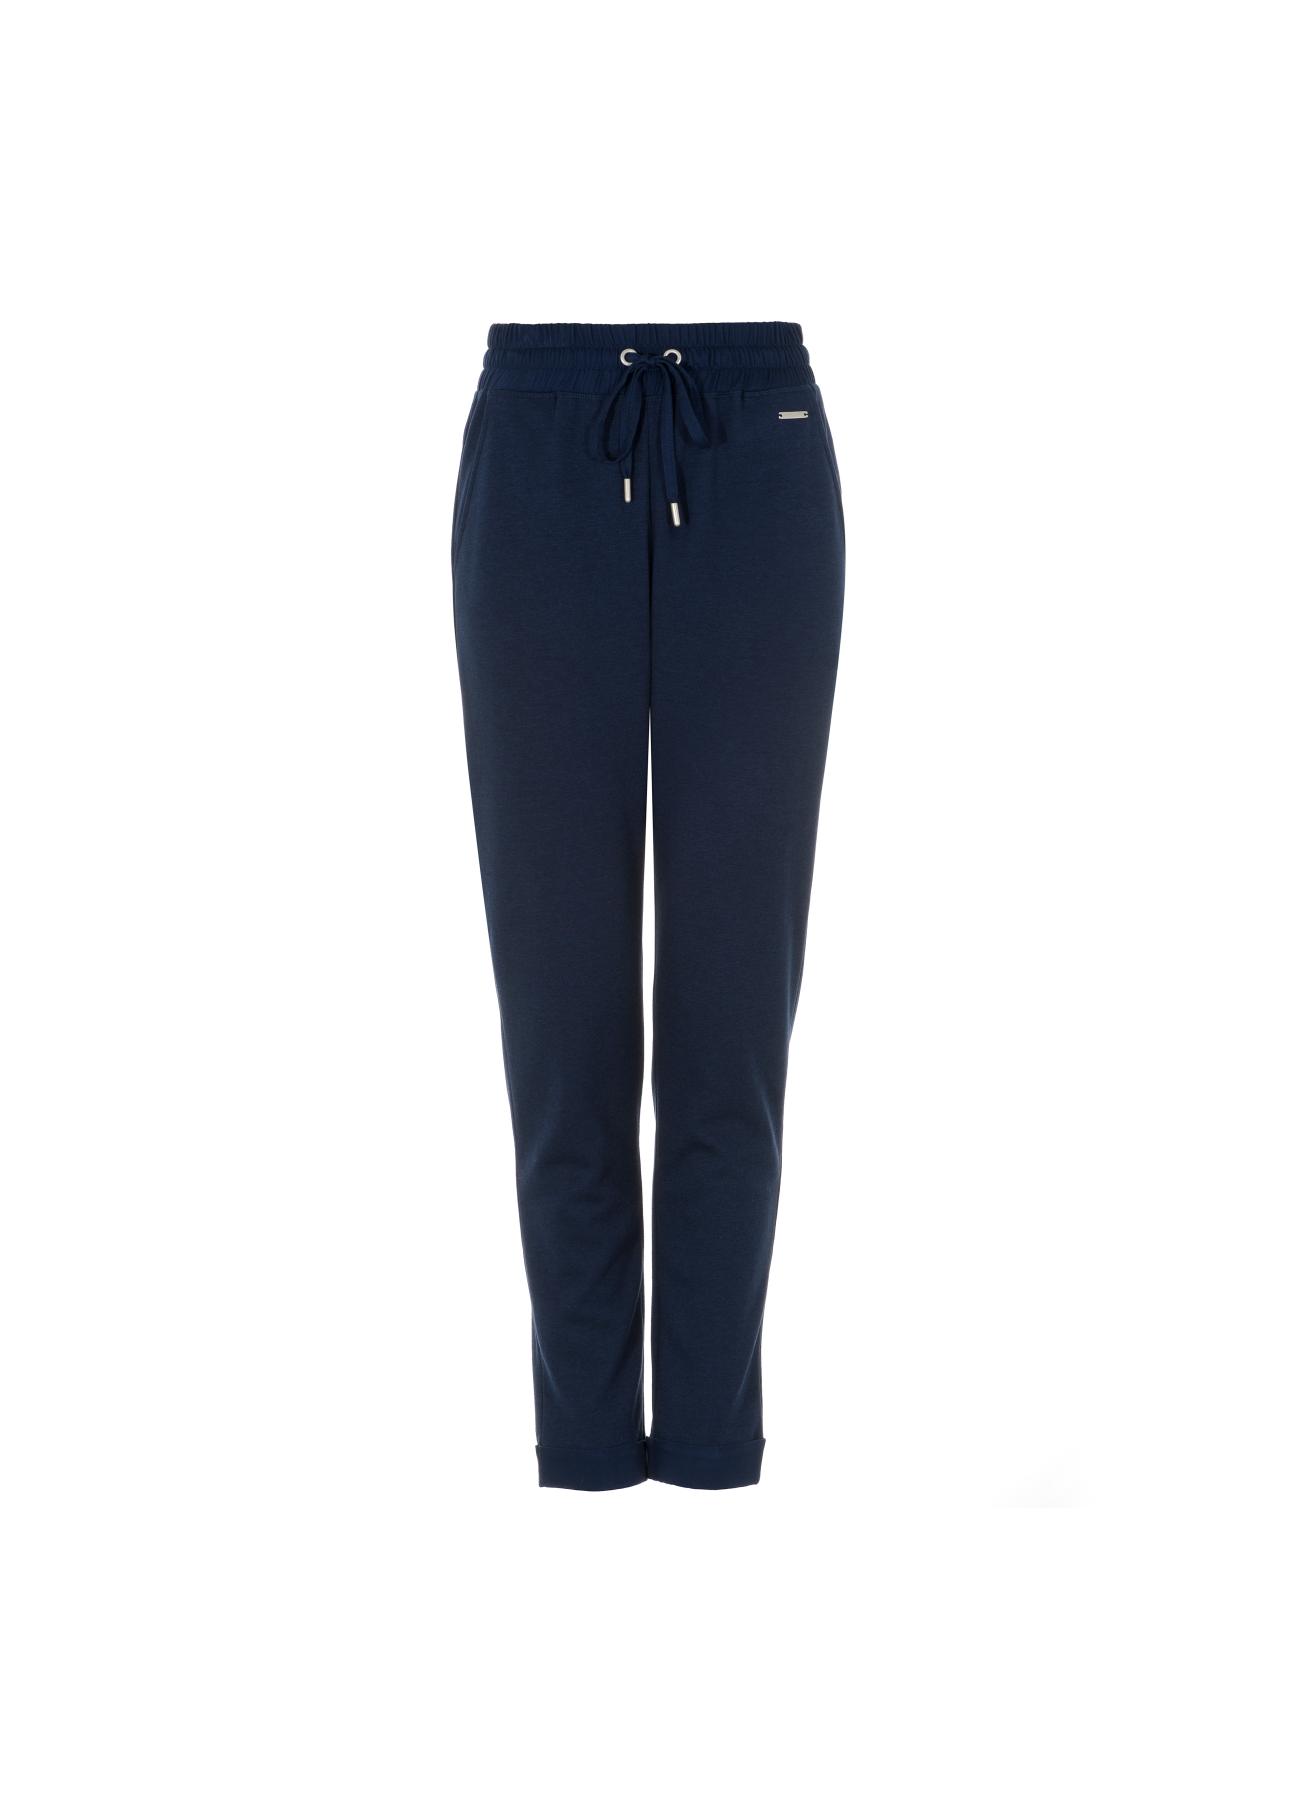 Granatowe spodnie dresowe damskie SPODT-0048-69(Z21)